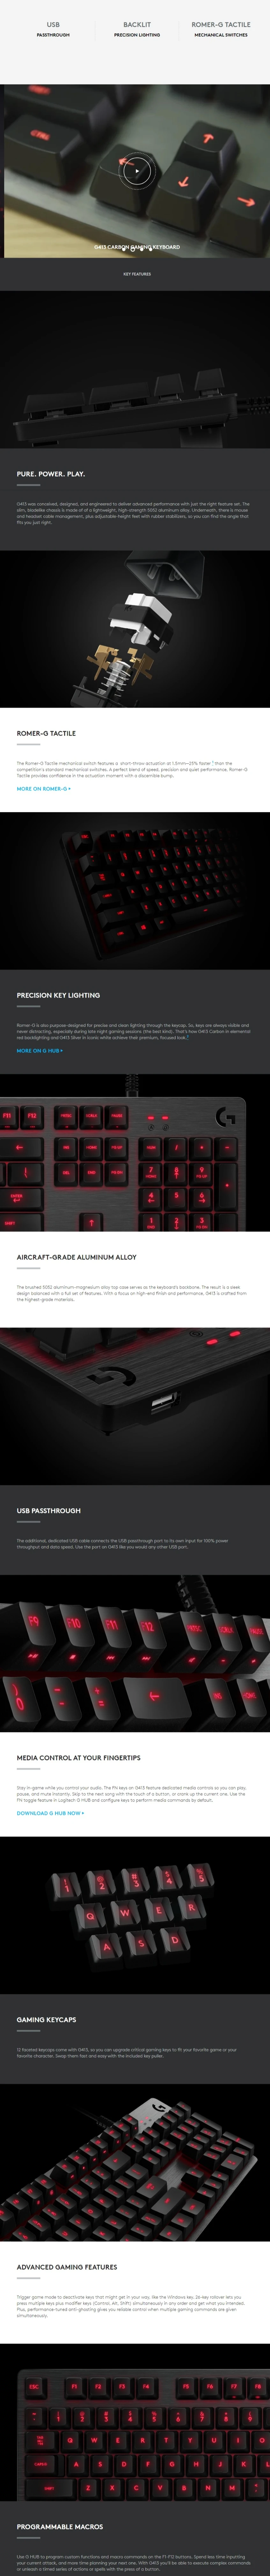 LogitechG-G413-Mechanical-Gaming-Keyboard